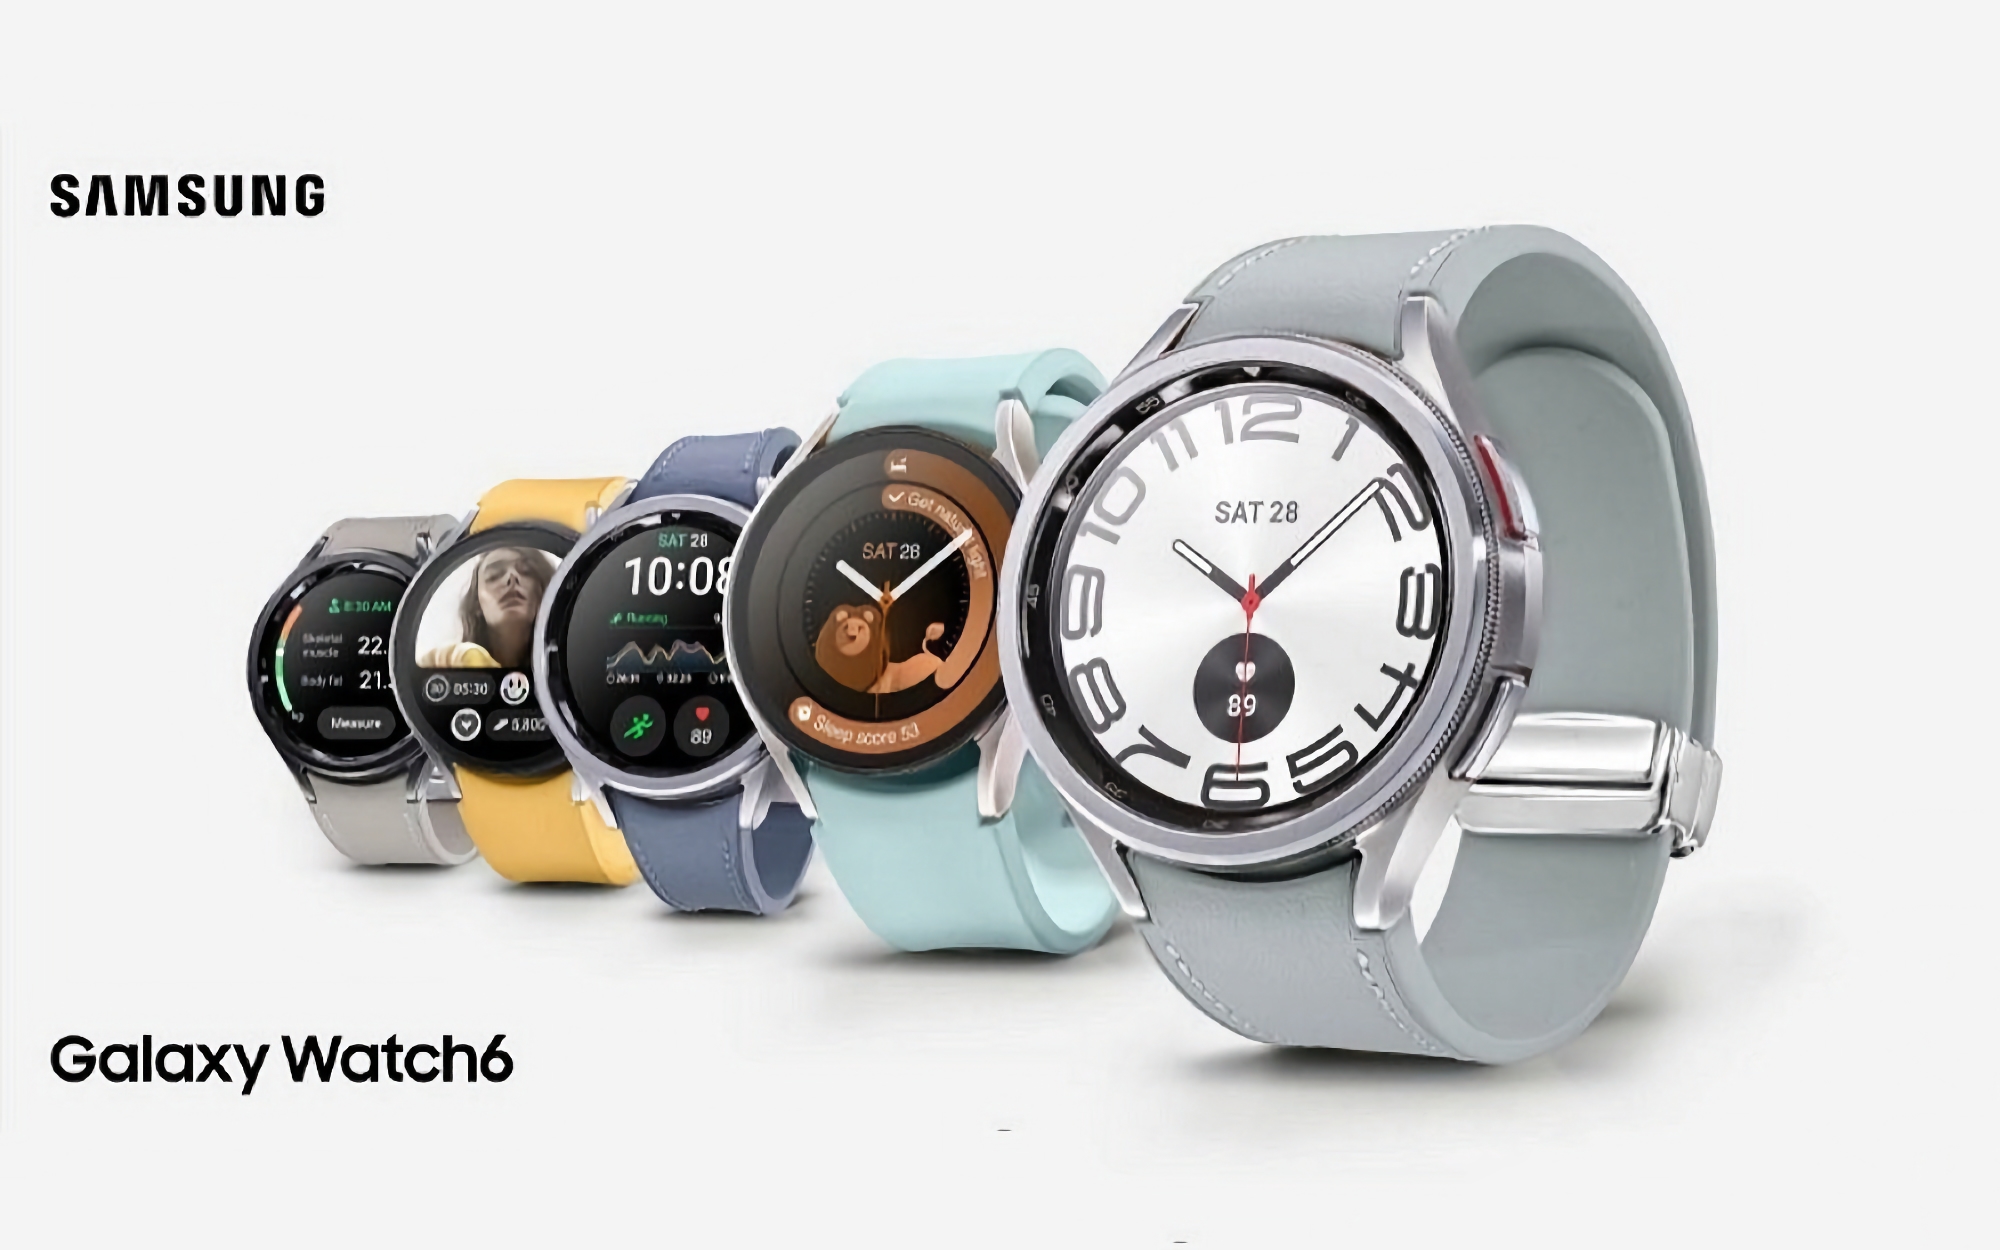 Cuatro tamaños y compatibilidad con LTE: aparecen en Internet nuevos detalles sobre los smartwatches Galaxy Watch 6 y Galaxy Watch 6 Classic de Samsung